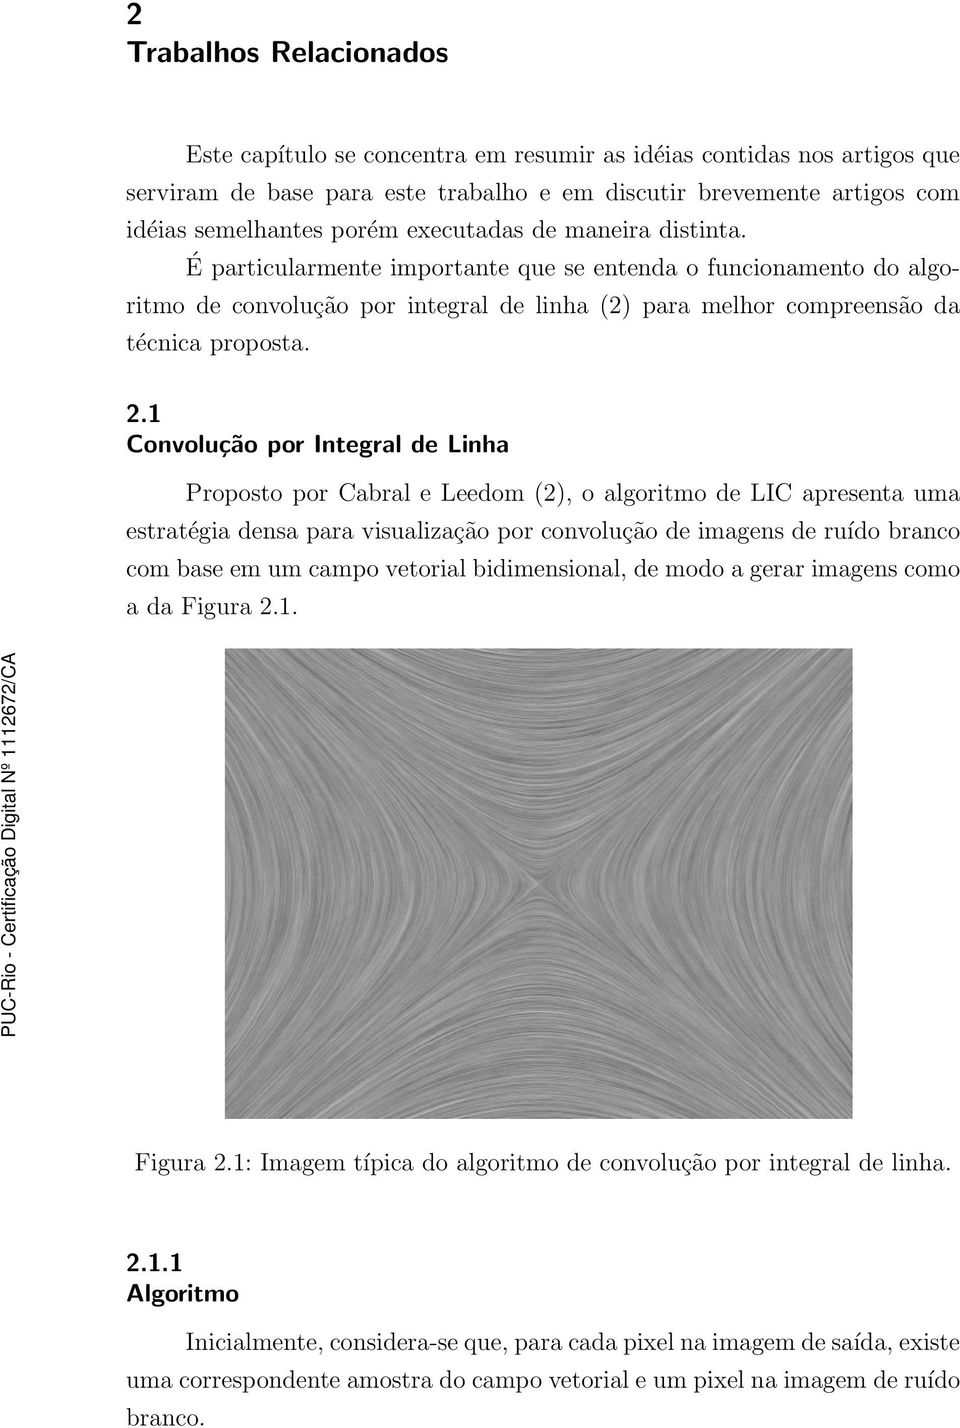 1 Convolução por Integral de Linha Proposto por Cabral e Leedom (2), o algoritmo de LIC apresenta uma estratégia densa para visualização por convolução de imagens de ruído branco com base em um campo